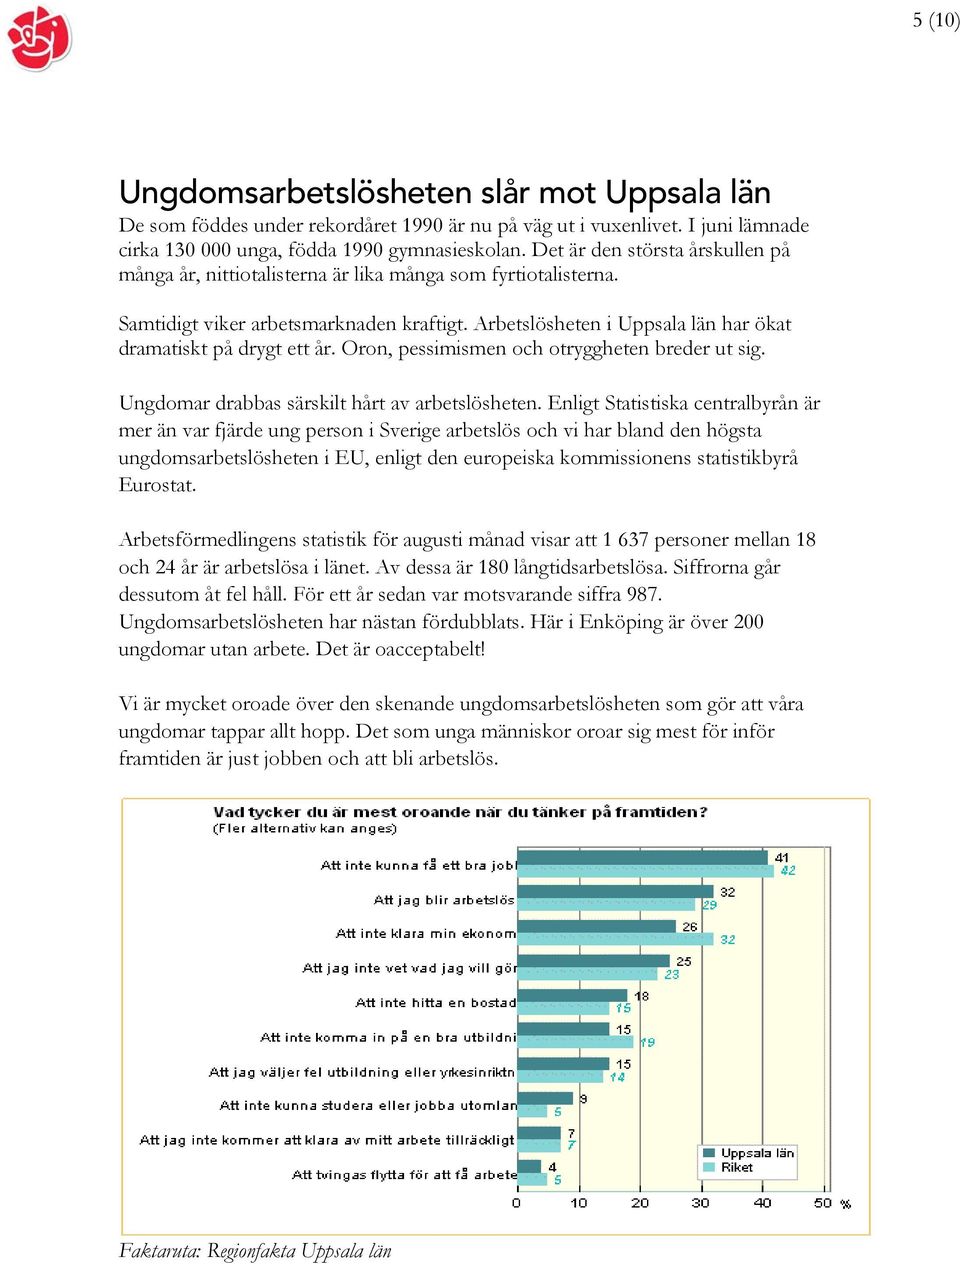 Arbetslösheten i Uppsala län har ökat dramatiskt på drygt ett år. Oron, pessimismen och otryggheten breder ut sig. Ungdomar drabbas särskilt hårt av arbetslösheten.